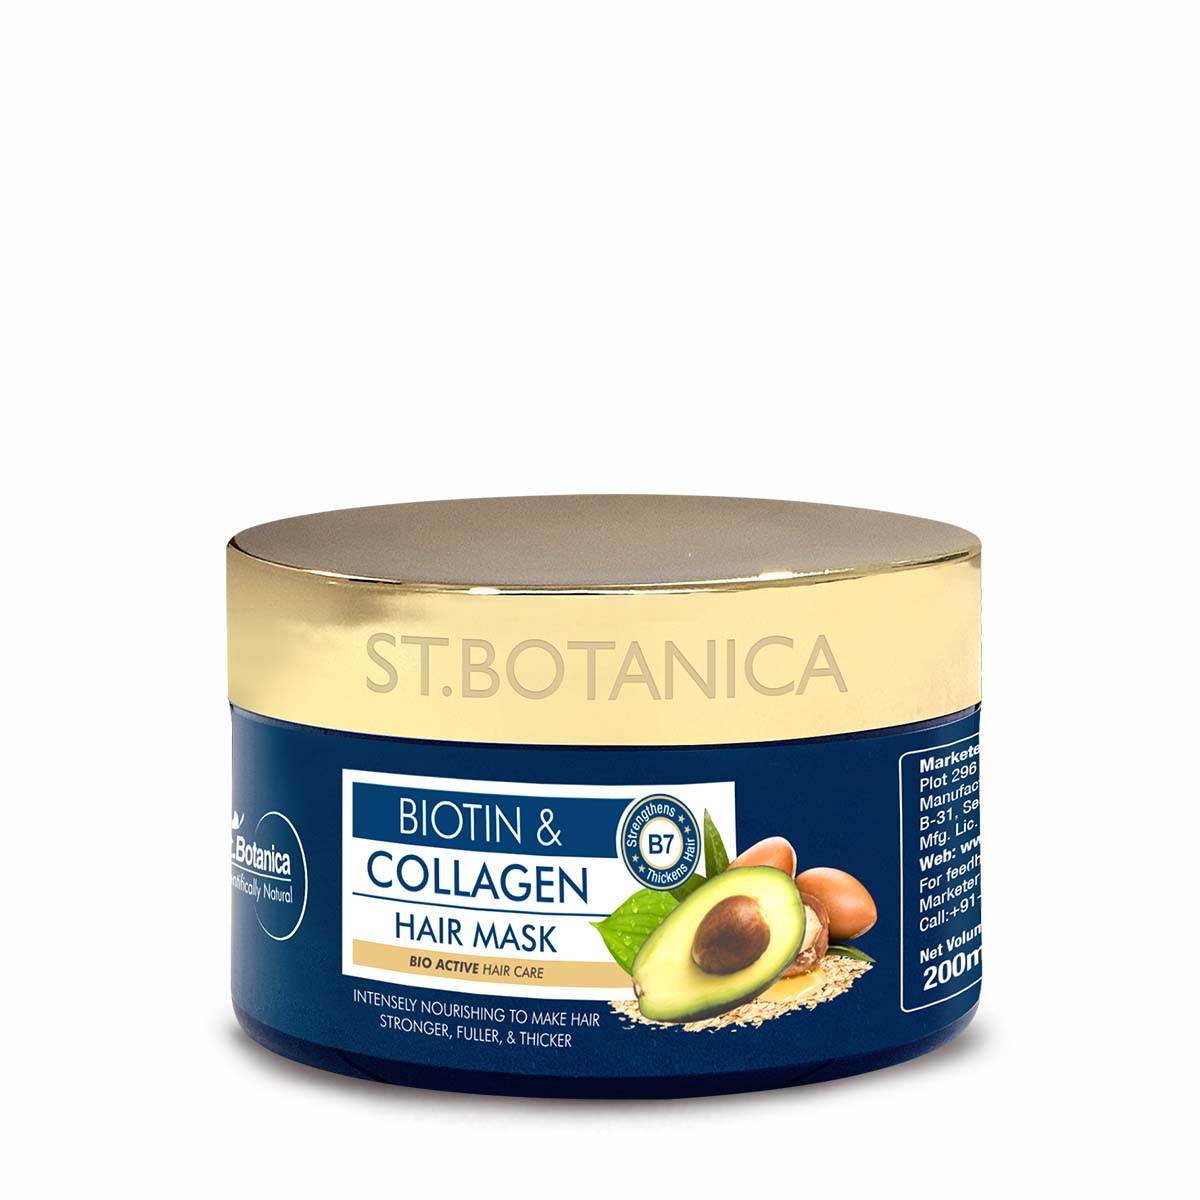 St.Botanica Biotin & Collagen Hair Mask - For Stronger, Fuller and Thicker Hair, 200 ml